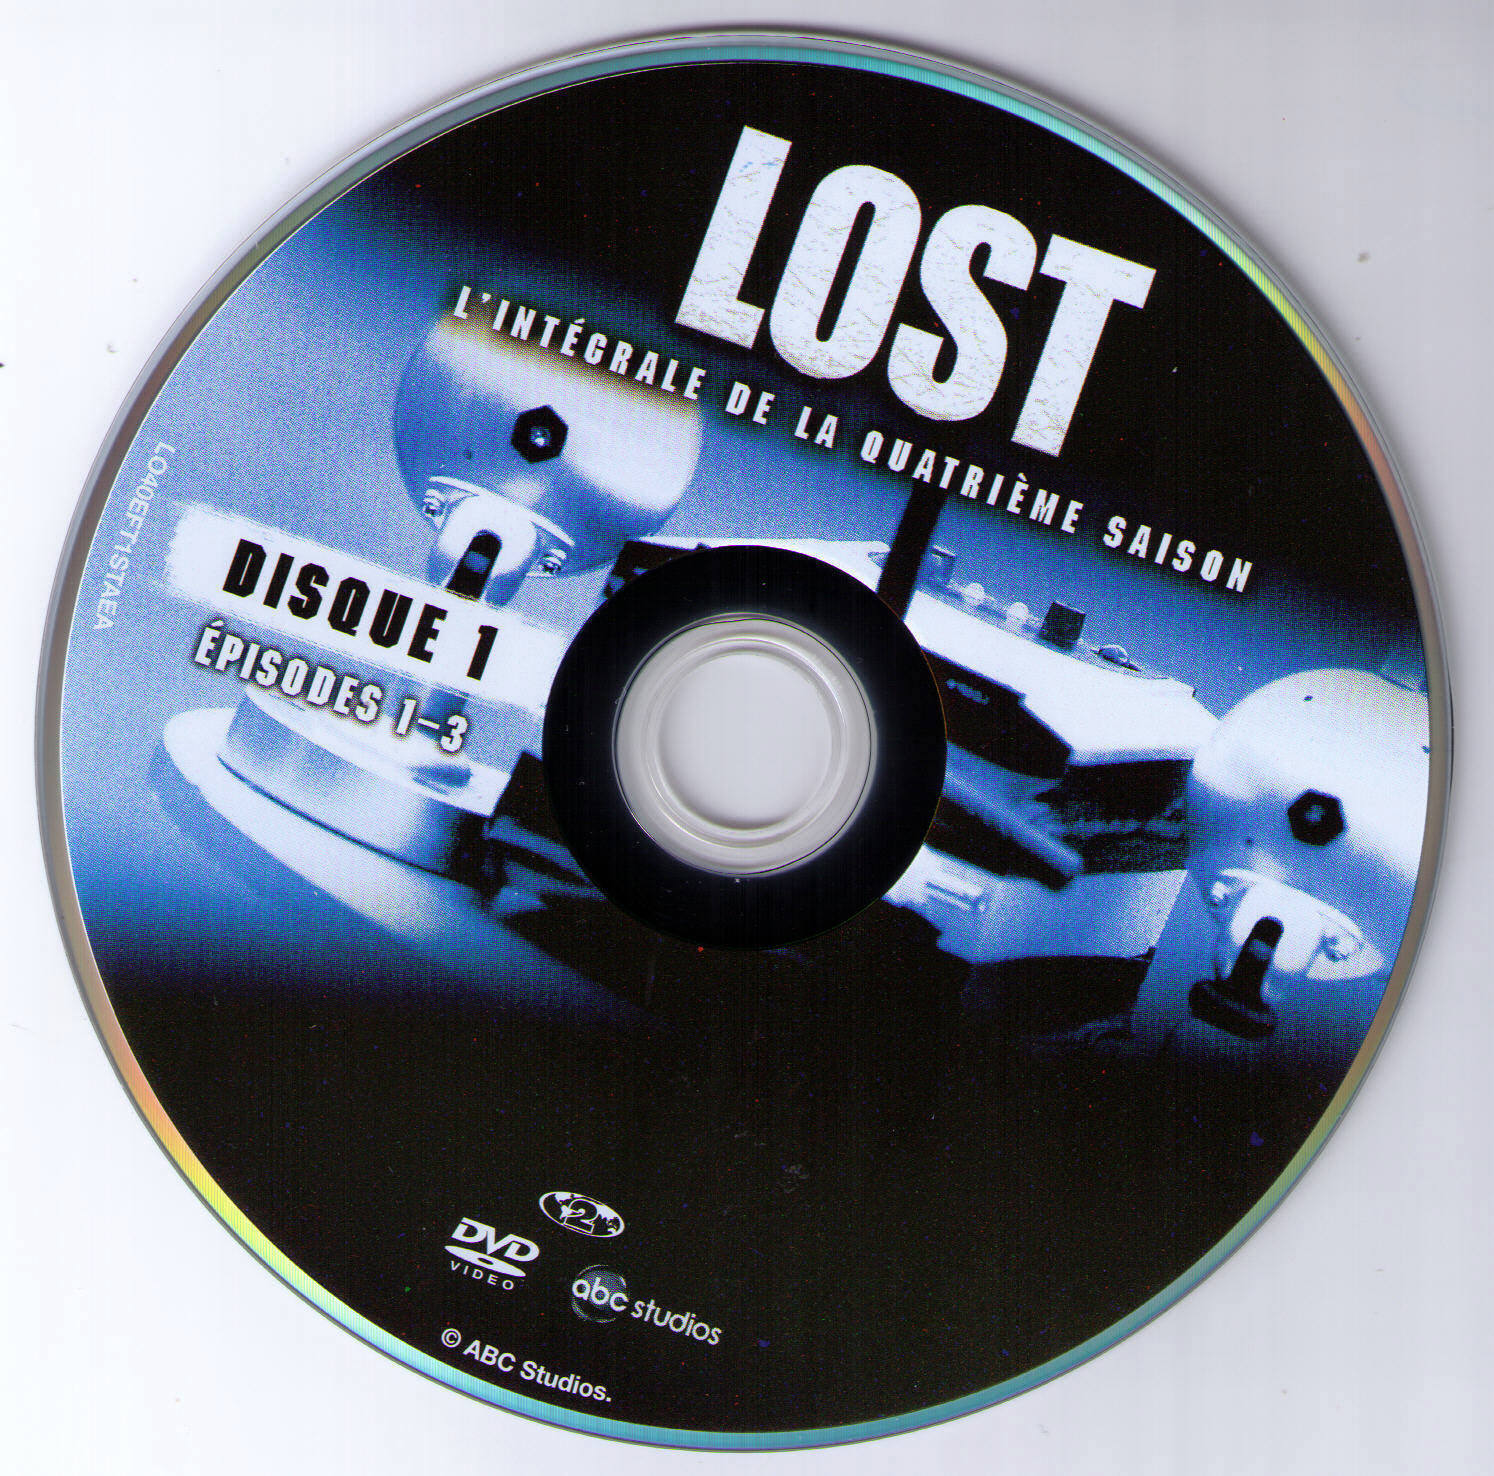 Lost Saison 4 DISC 1